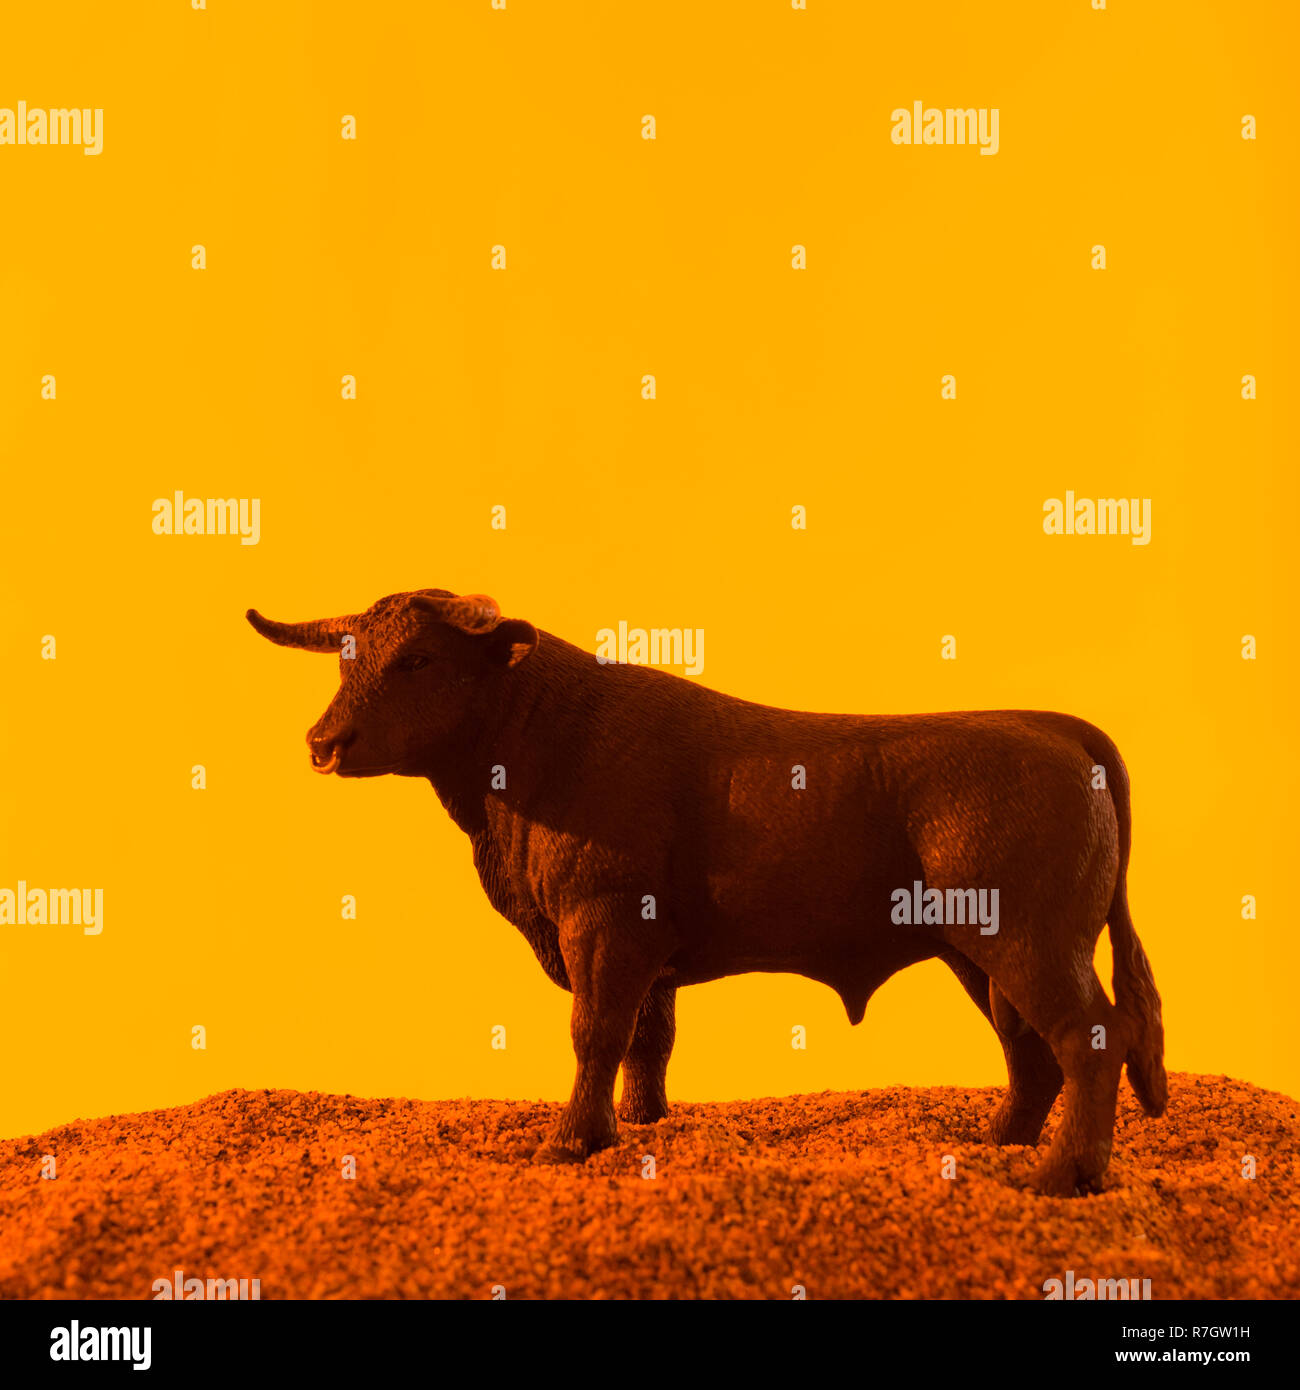 Spielzeug Stier gegen orange-gelb leuchtenden Sonnenuntergang Art Kulisse.  Metapher für 'Vertrauen' und Börse Stiere, Paarung. Siehe HINZUFÜGEN.  Informationen. HINWEIS Stockfotografie - Alamy